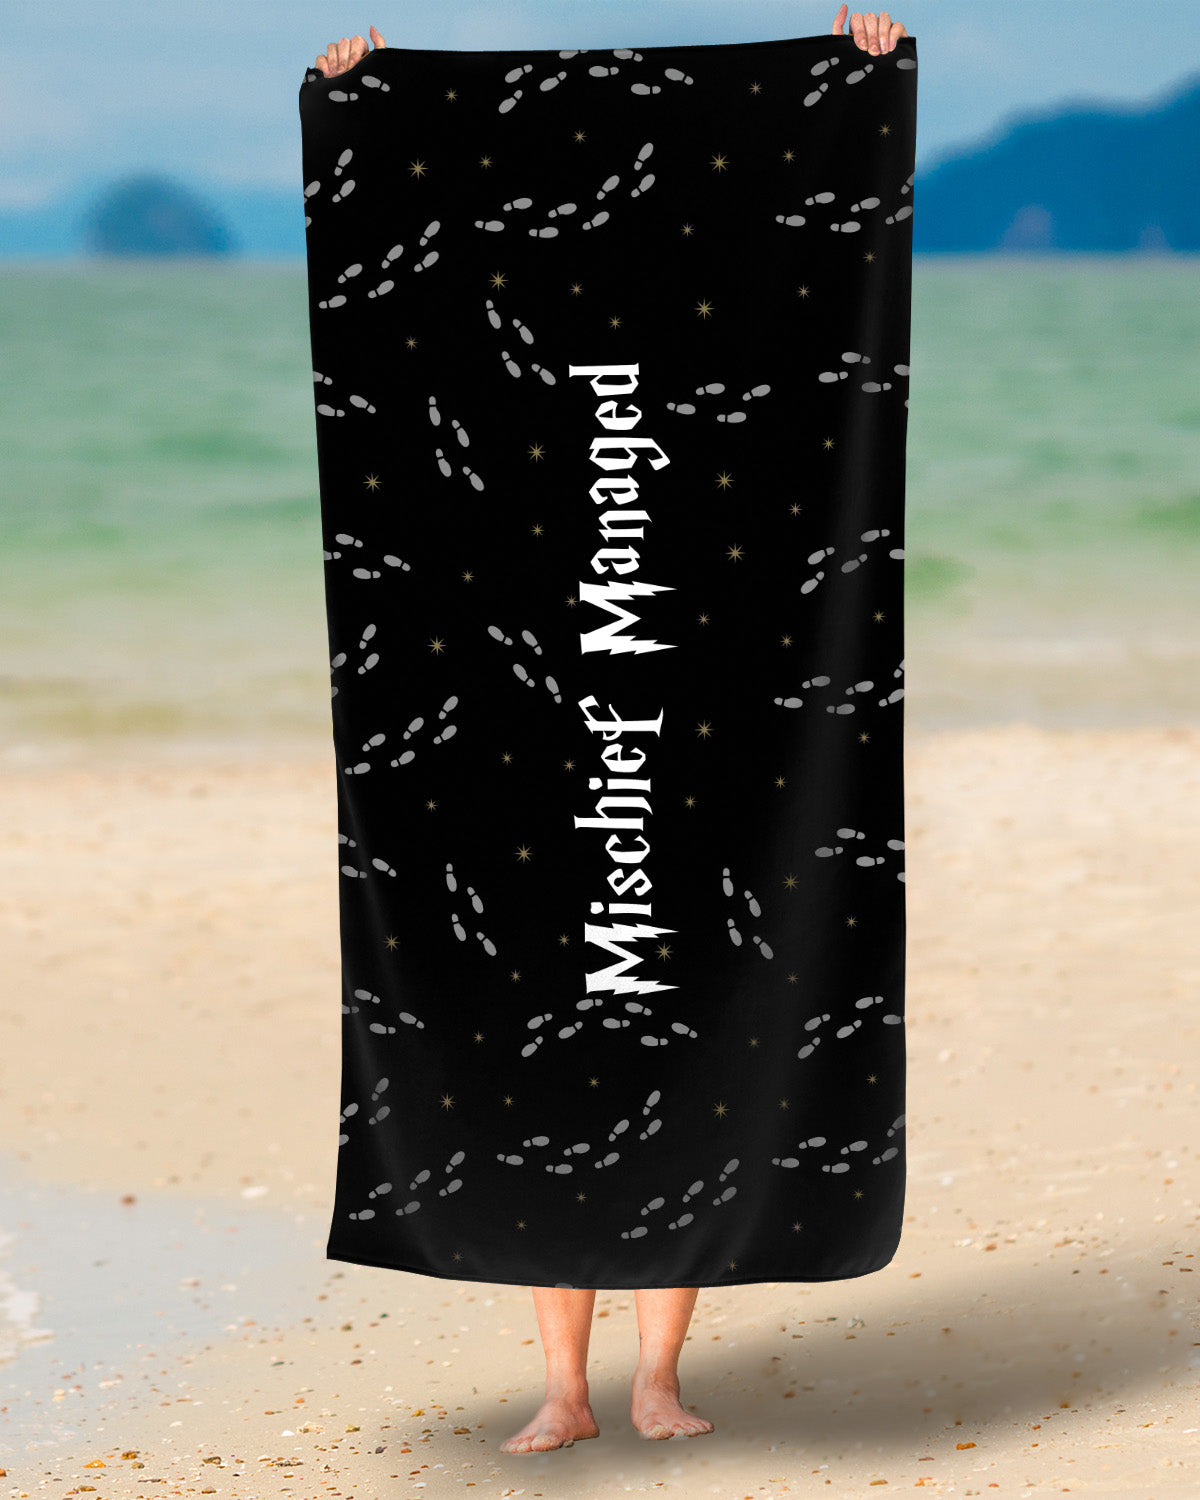 Mischief Managed Beach Towel